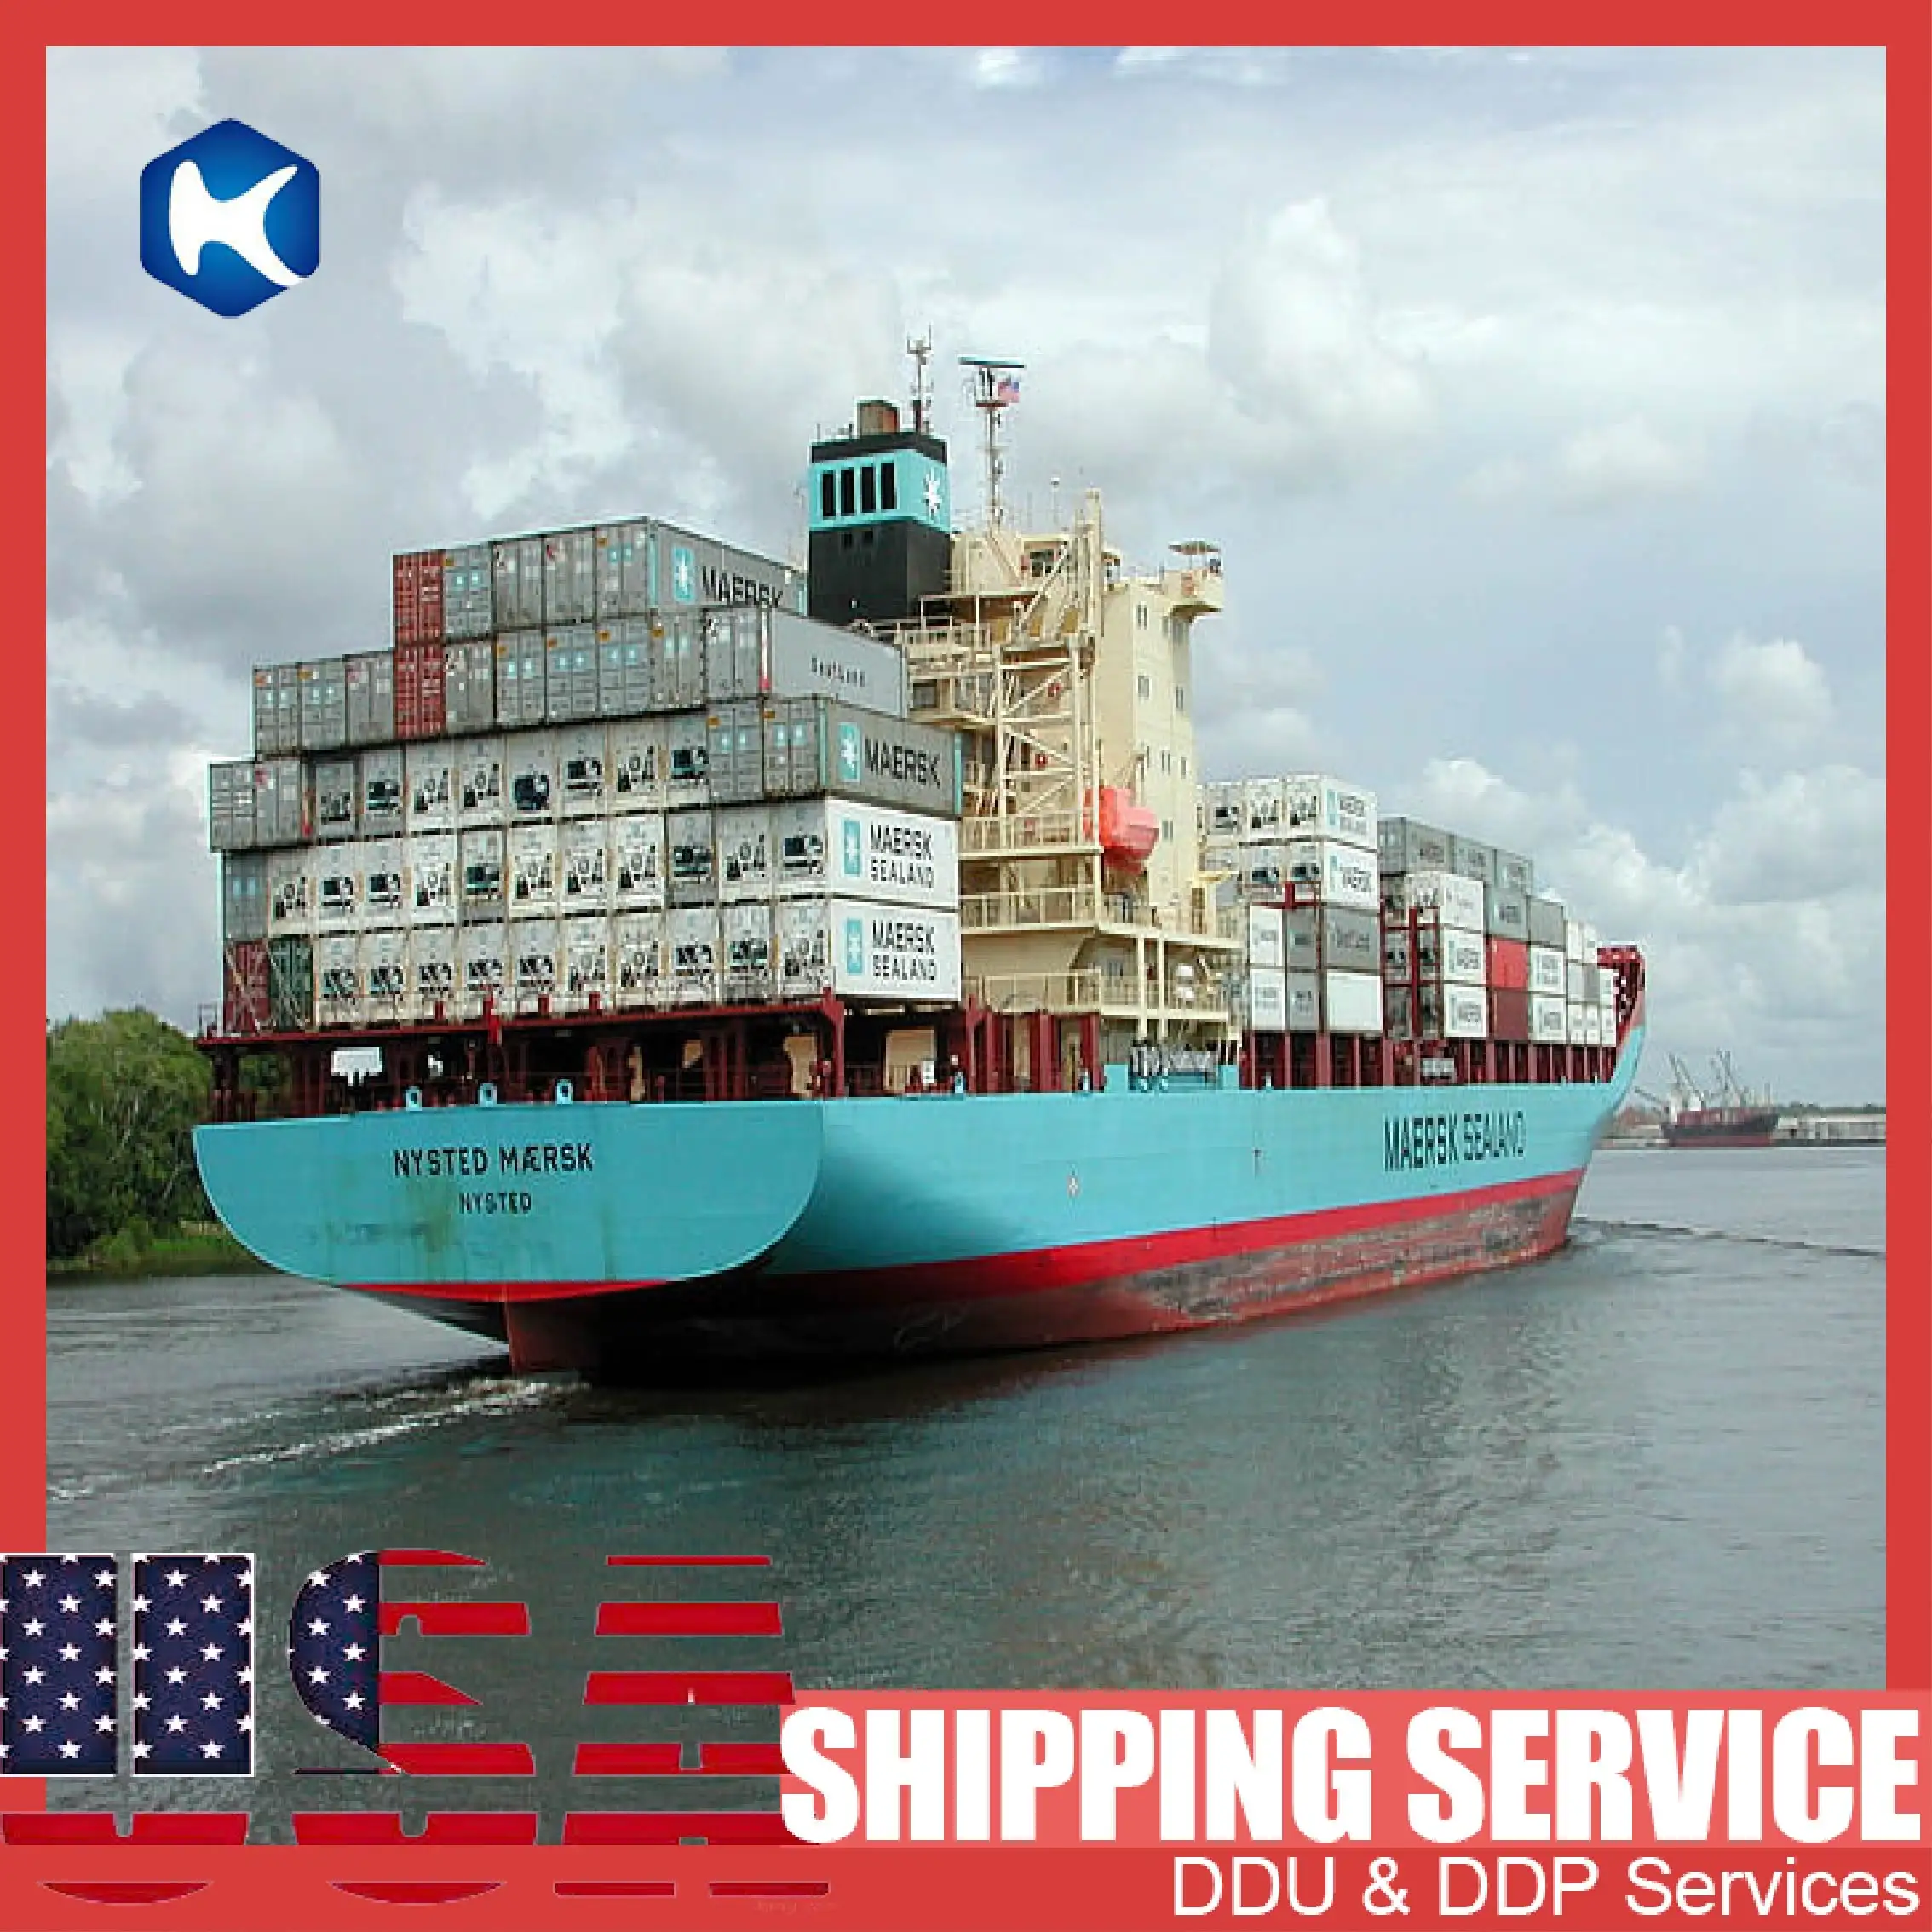 ตัวแทนจัดส่งสินค้าภายในการส่งต่อการขนส่งสินค้าจากประเทศจีนการขนส่งทางทะเลไปยังปานามา